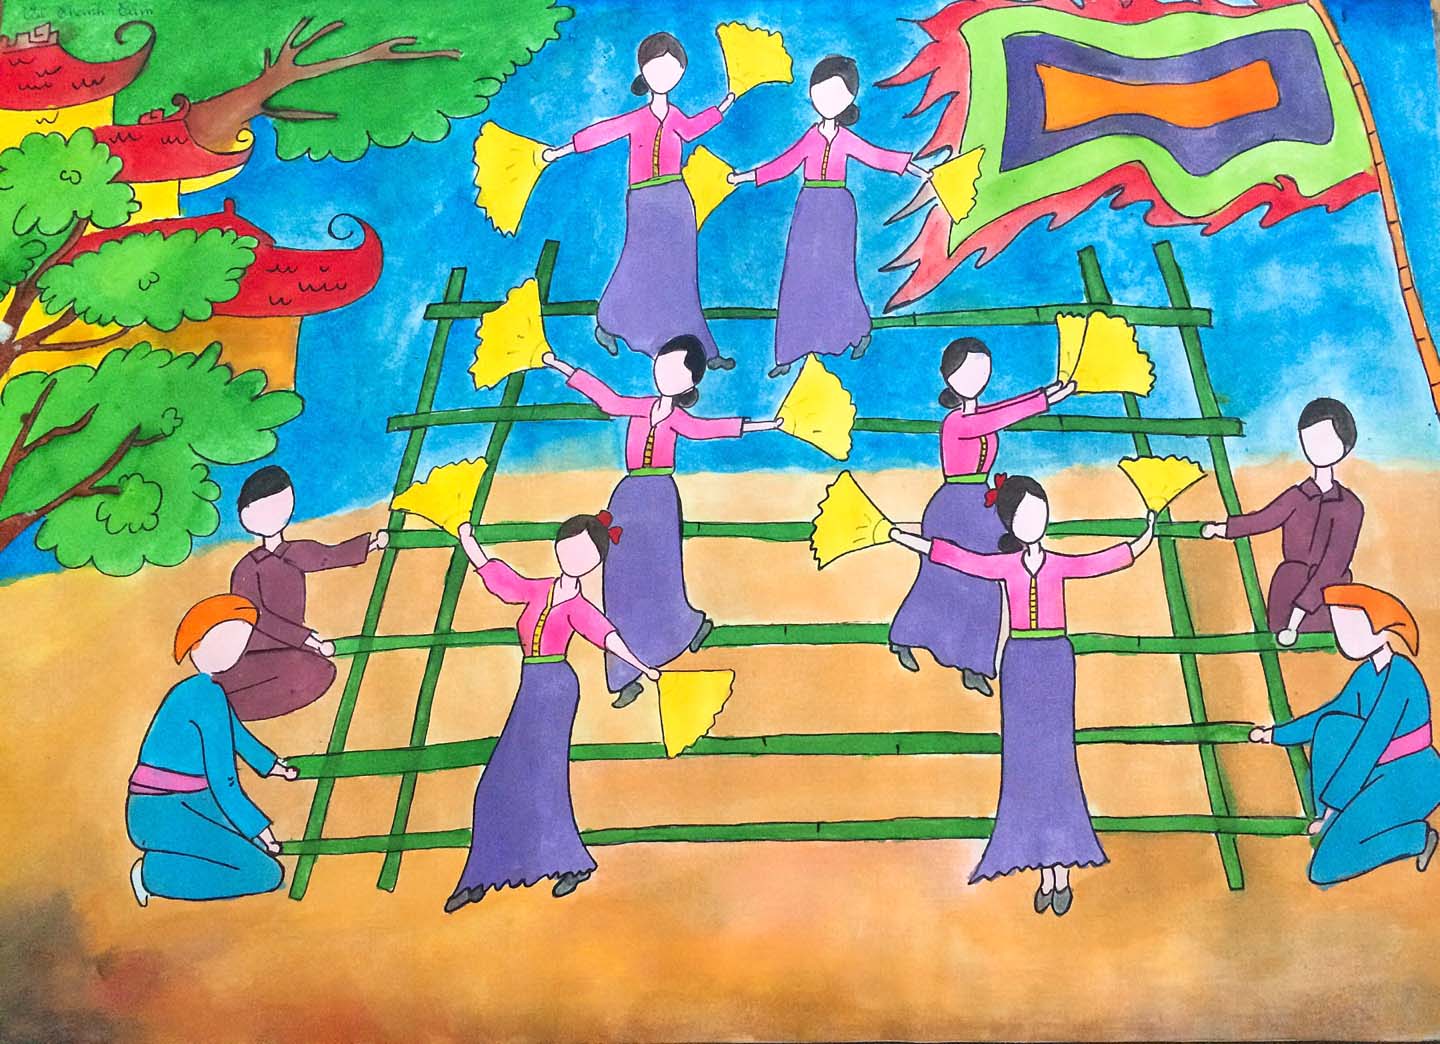 Vẽ tranh đề tài lễ hội  Vẽ tranh ngày tết  Vẽ tranh lễ hội Hội Lim   YouTube